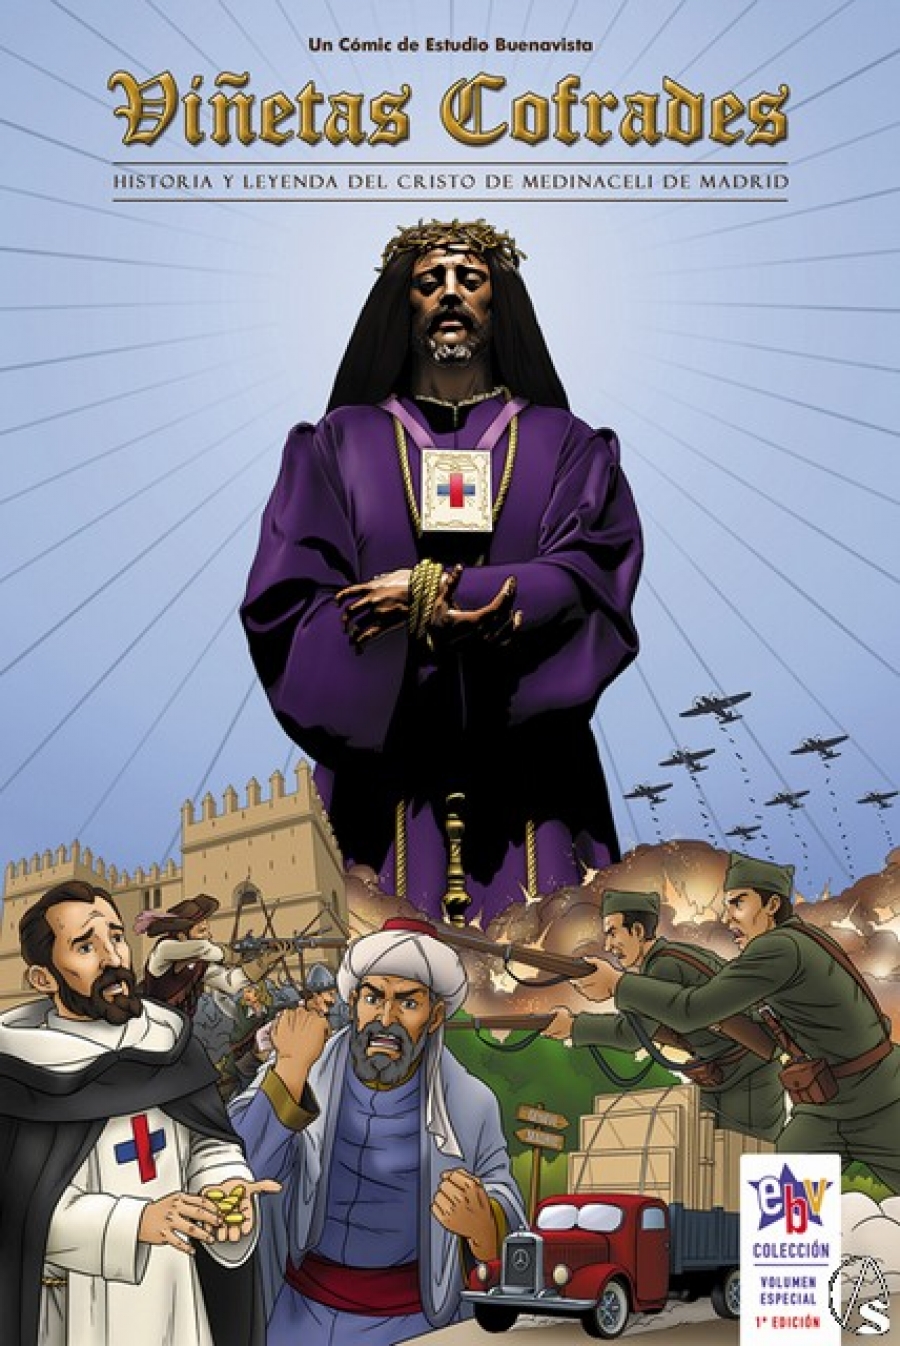 Mañana se presenta un cómic que repasa la historia y leyenda del Cristo de Medinaceli de Madrid